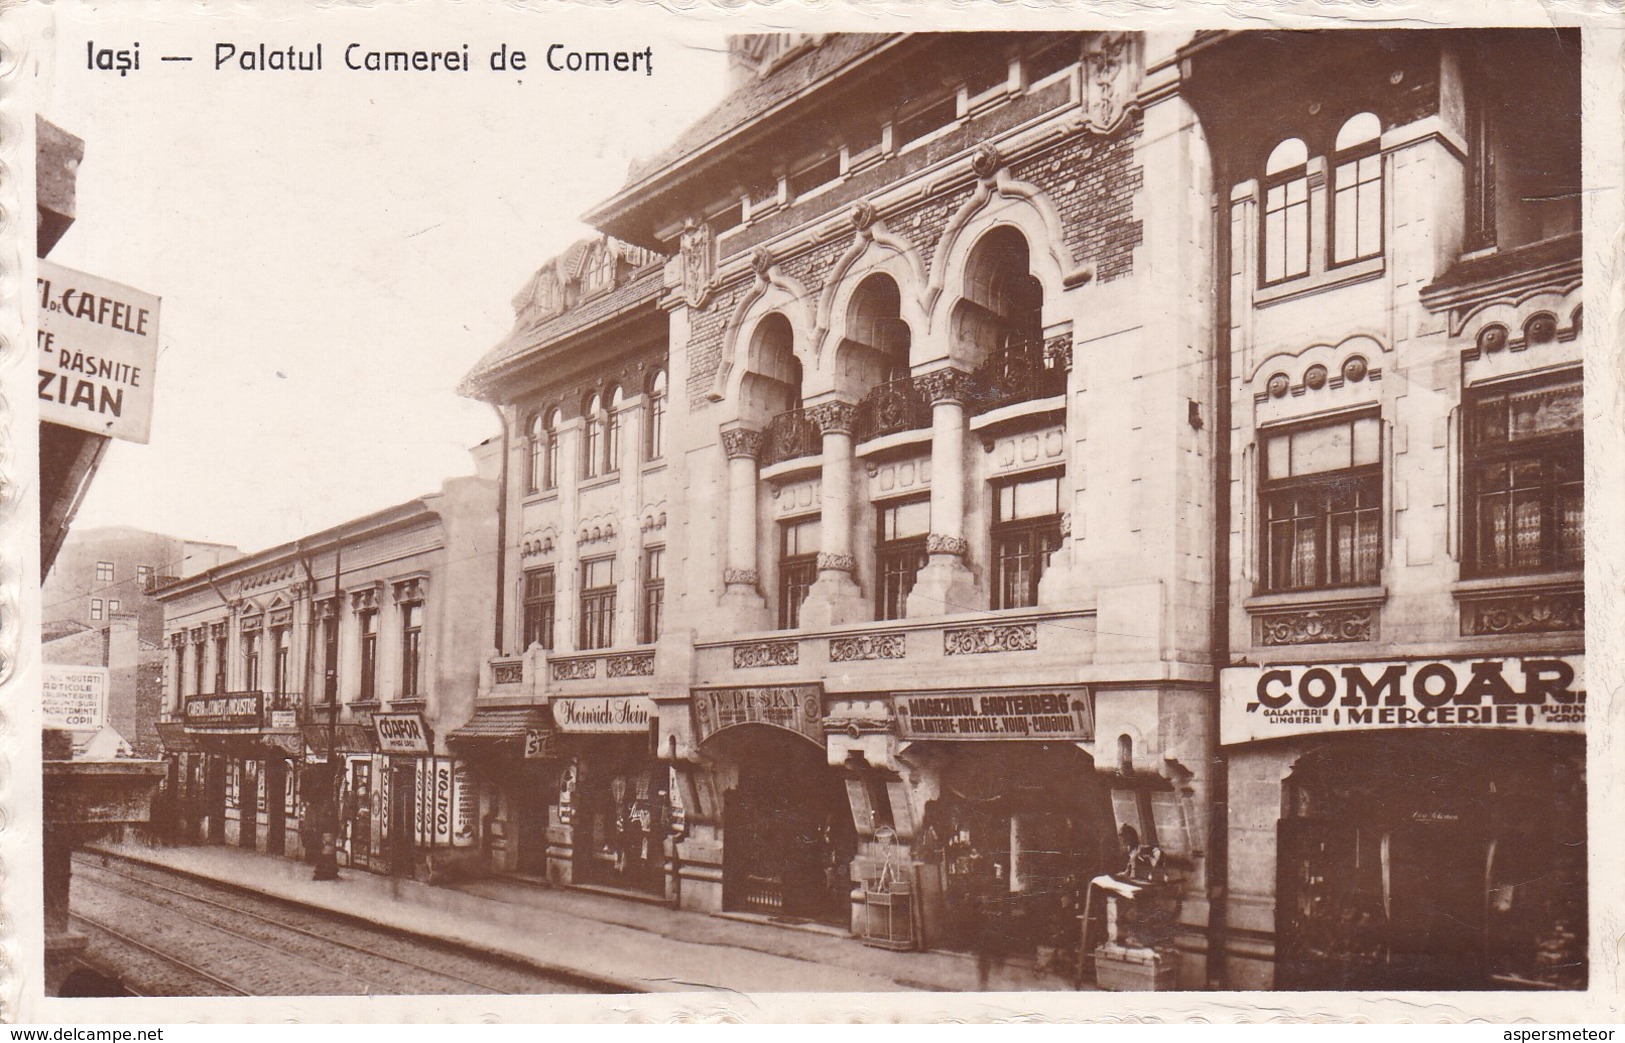 RUMANIA. IASI. PALATUL CAMEREI DE COMERT. EDIT LIBRARIEI SOCEC & CO SA. CIRCA 1915.- BLEUP - Rumänien